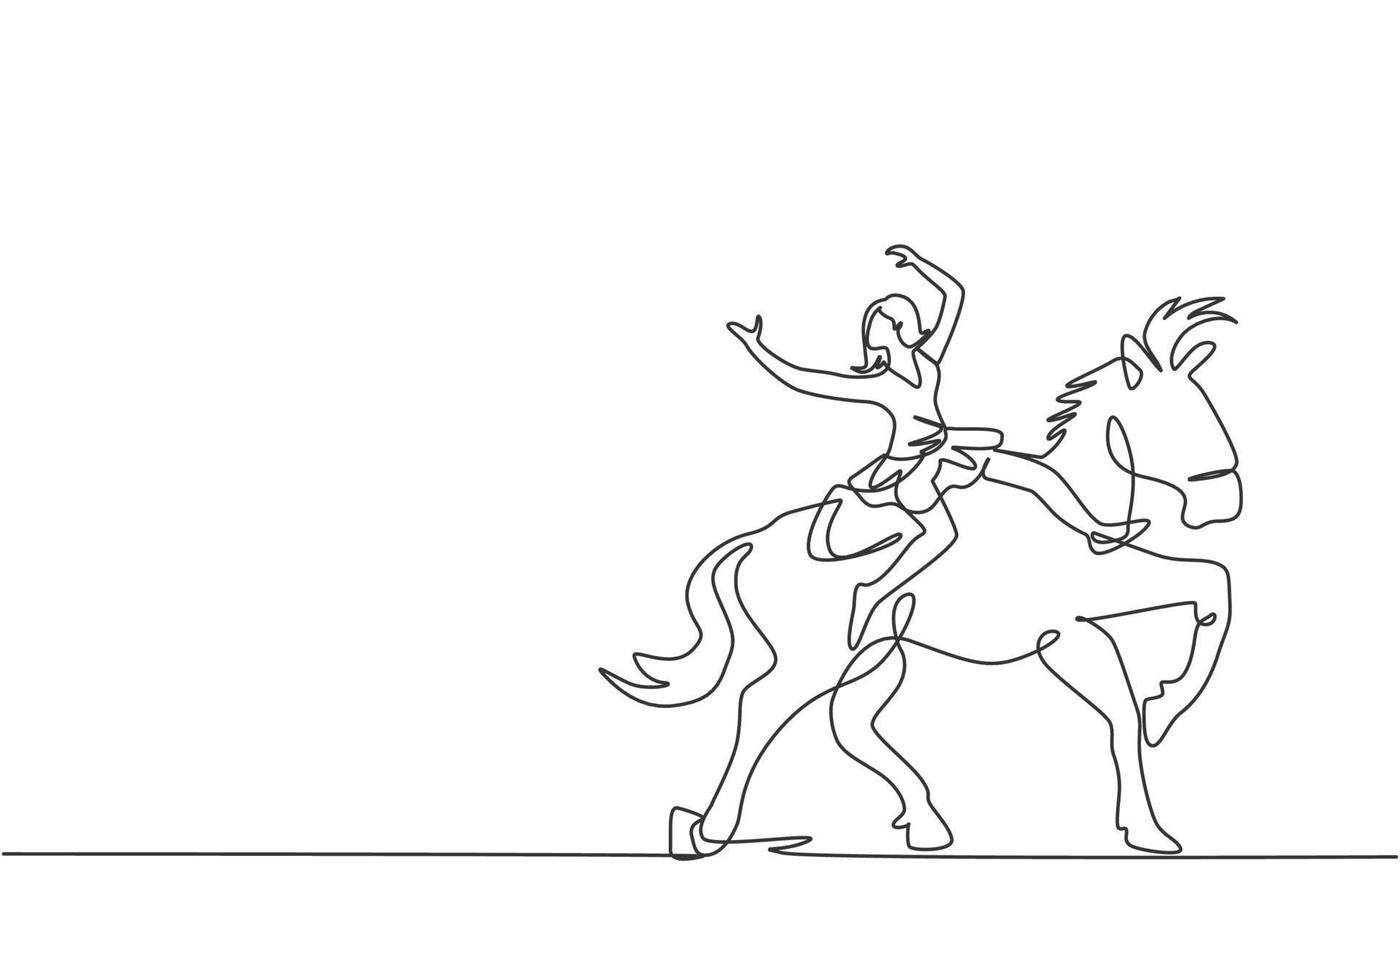 une seule ligne dessinant une acrobate joue sur un cheval de cirque tout en dansant sur le dos du cheval et lève les mains. le cheval entre dans la danse. une ligne dessiner illustration vectorielle graphique de conception. vecteur